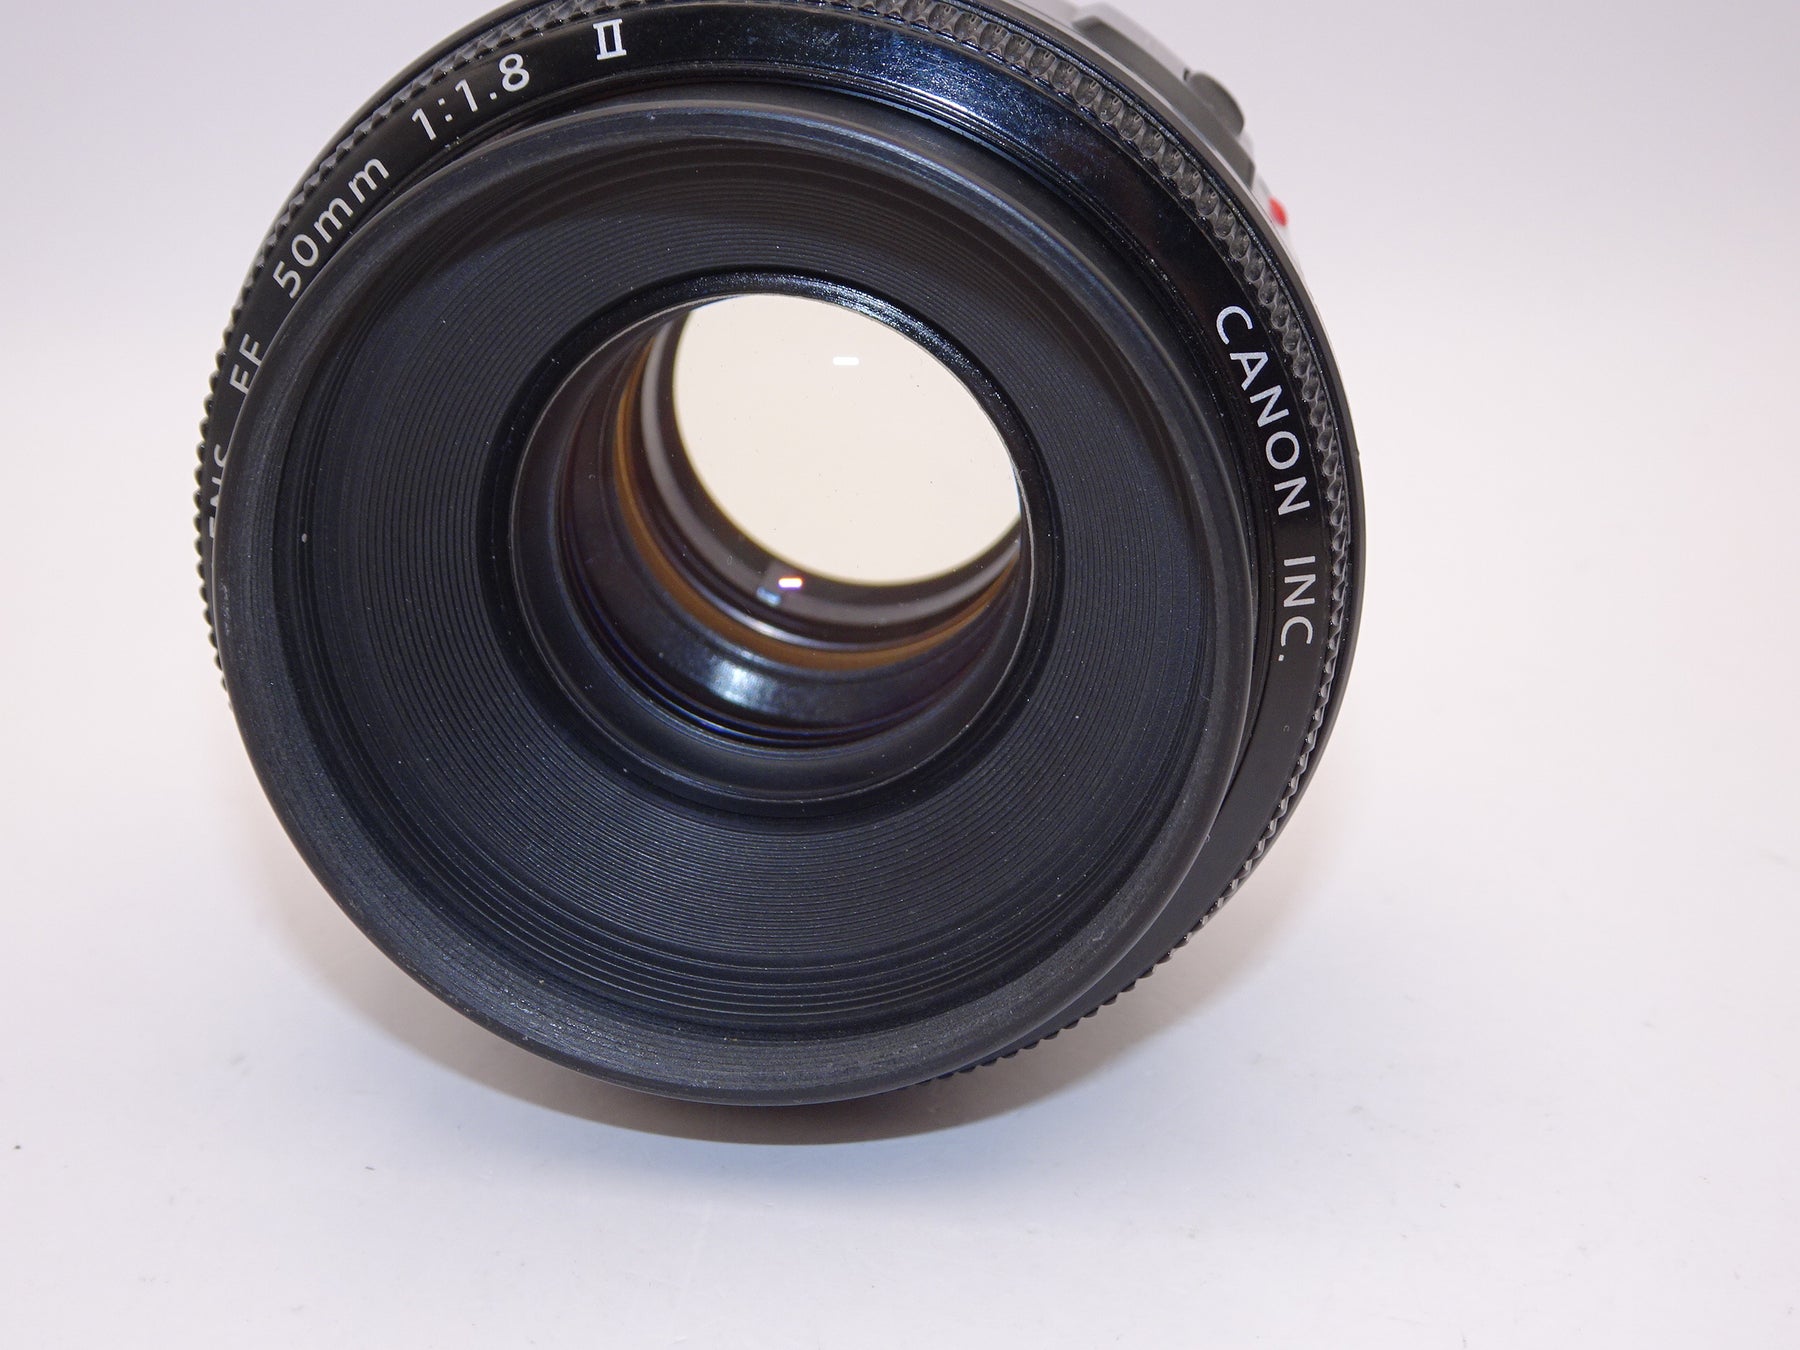 【外観特上級】Canon 単焦点レンズ EF50mm F1.8 II フルサイズ対応